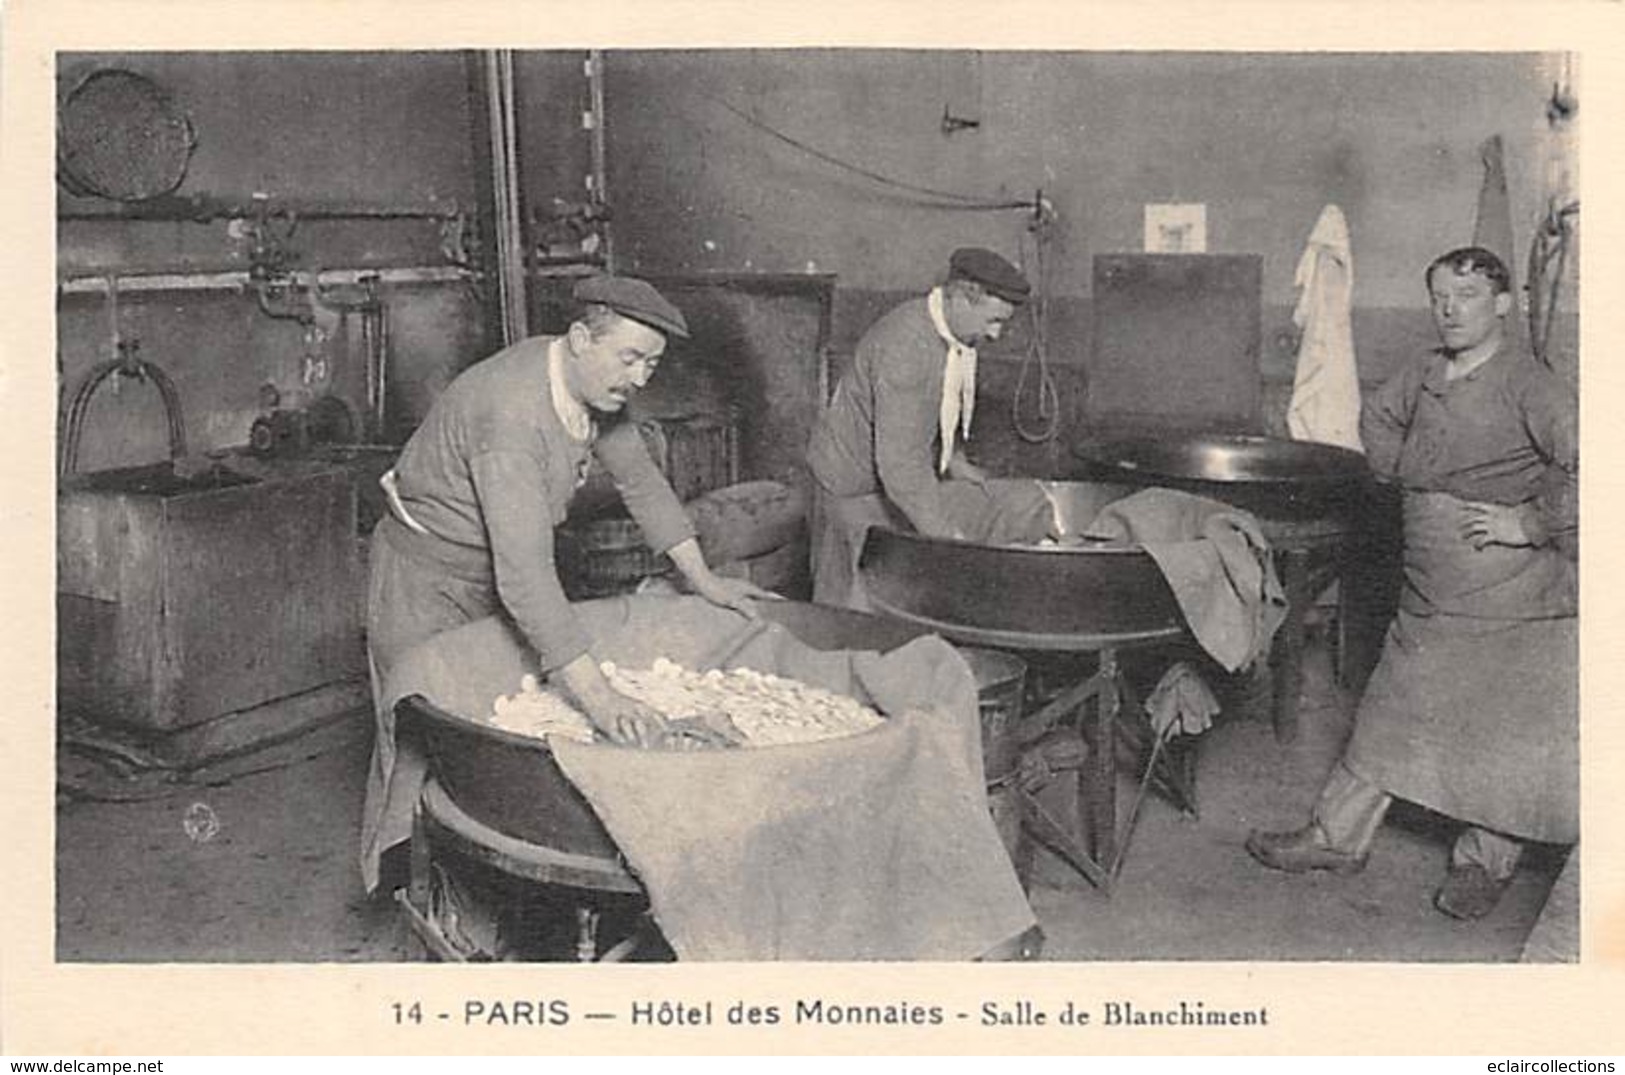 Paris     75  Hotel de la monnaie Fabrication. Série complète 24 CP Dos vierge  (voir scan)